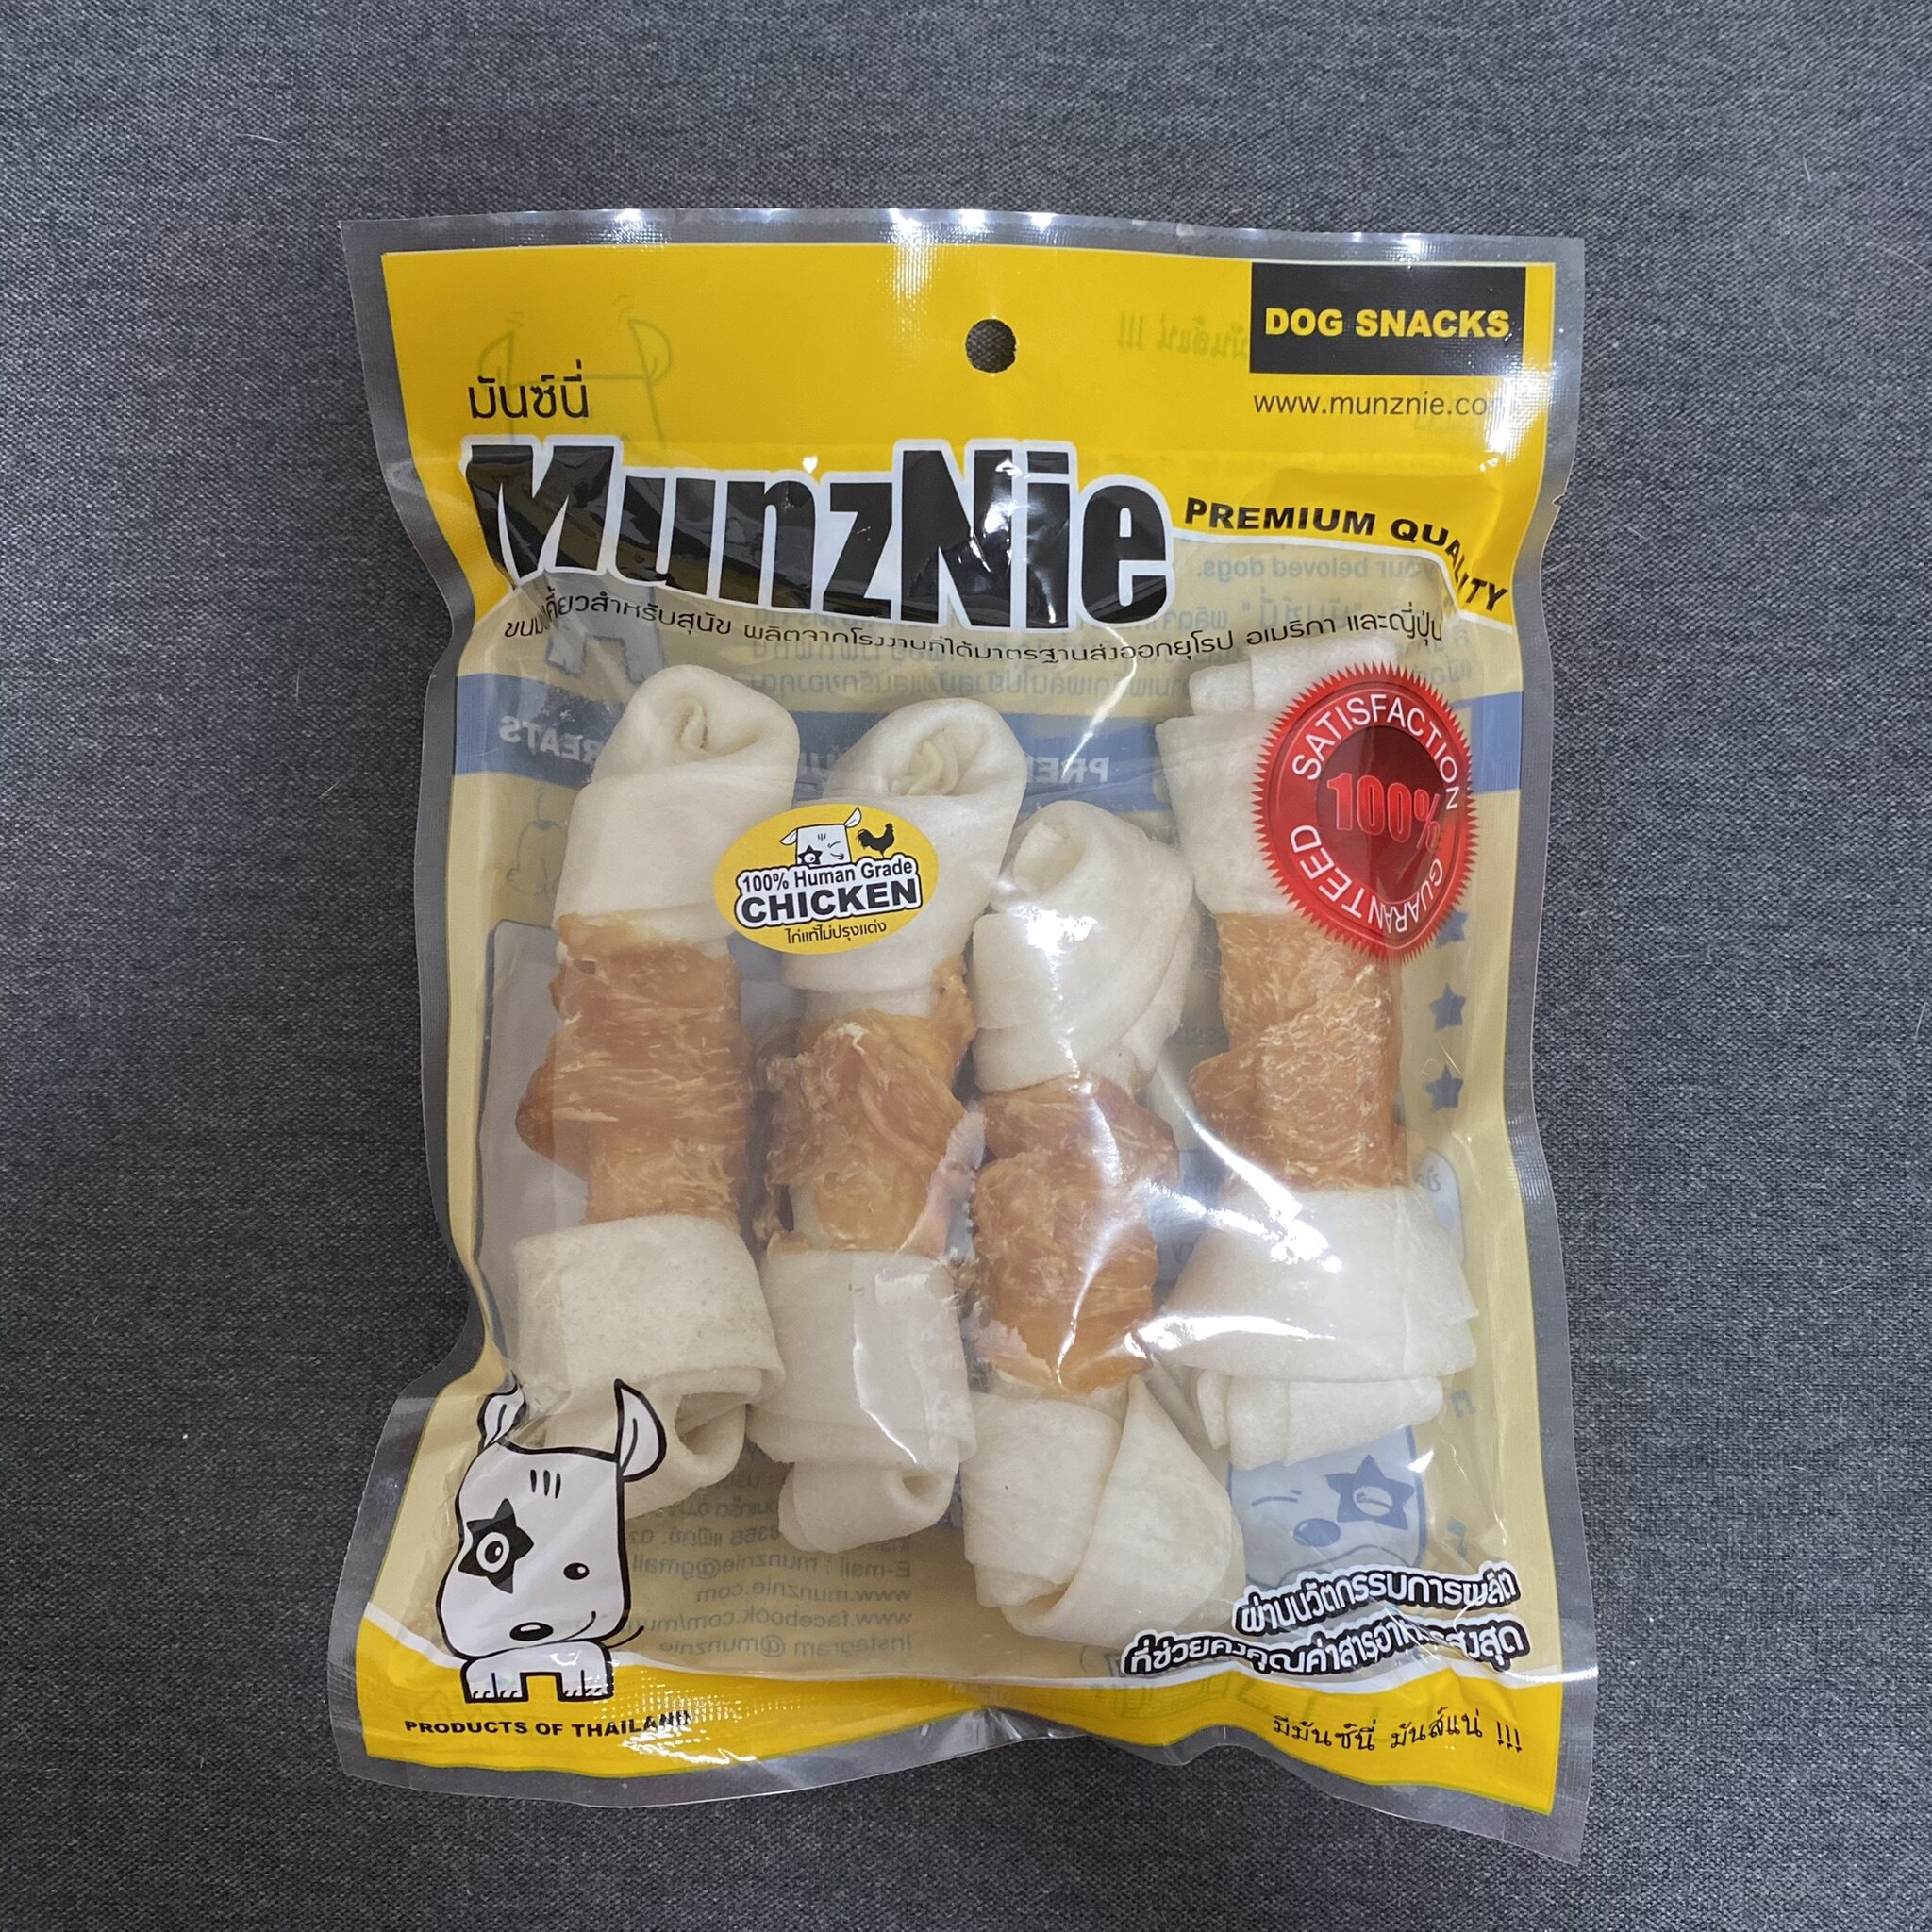 ขนมสุนัข ขนมหมา อาหารว่างสุนัข MUNZNIE กระดูกผูกขาว 4นิ้ว พันอกไก่ (x1 pack)